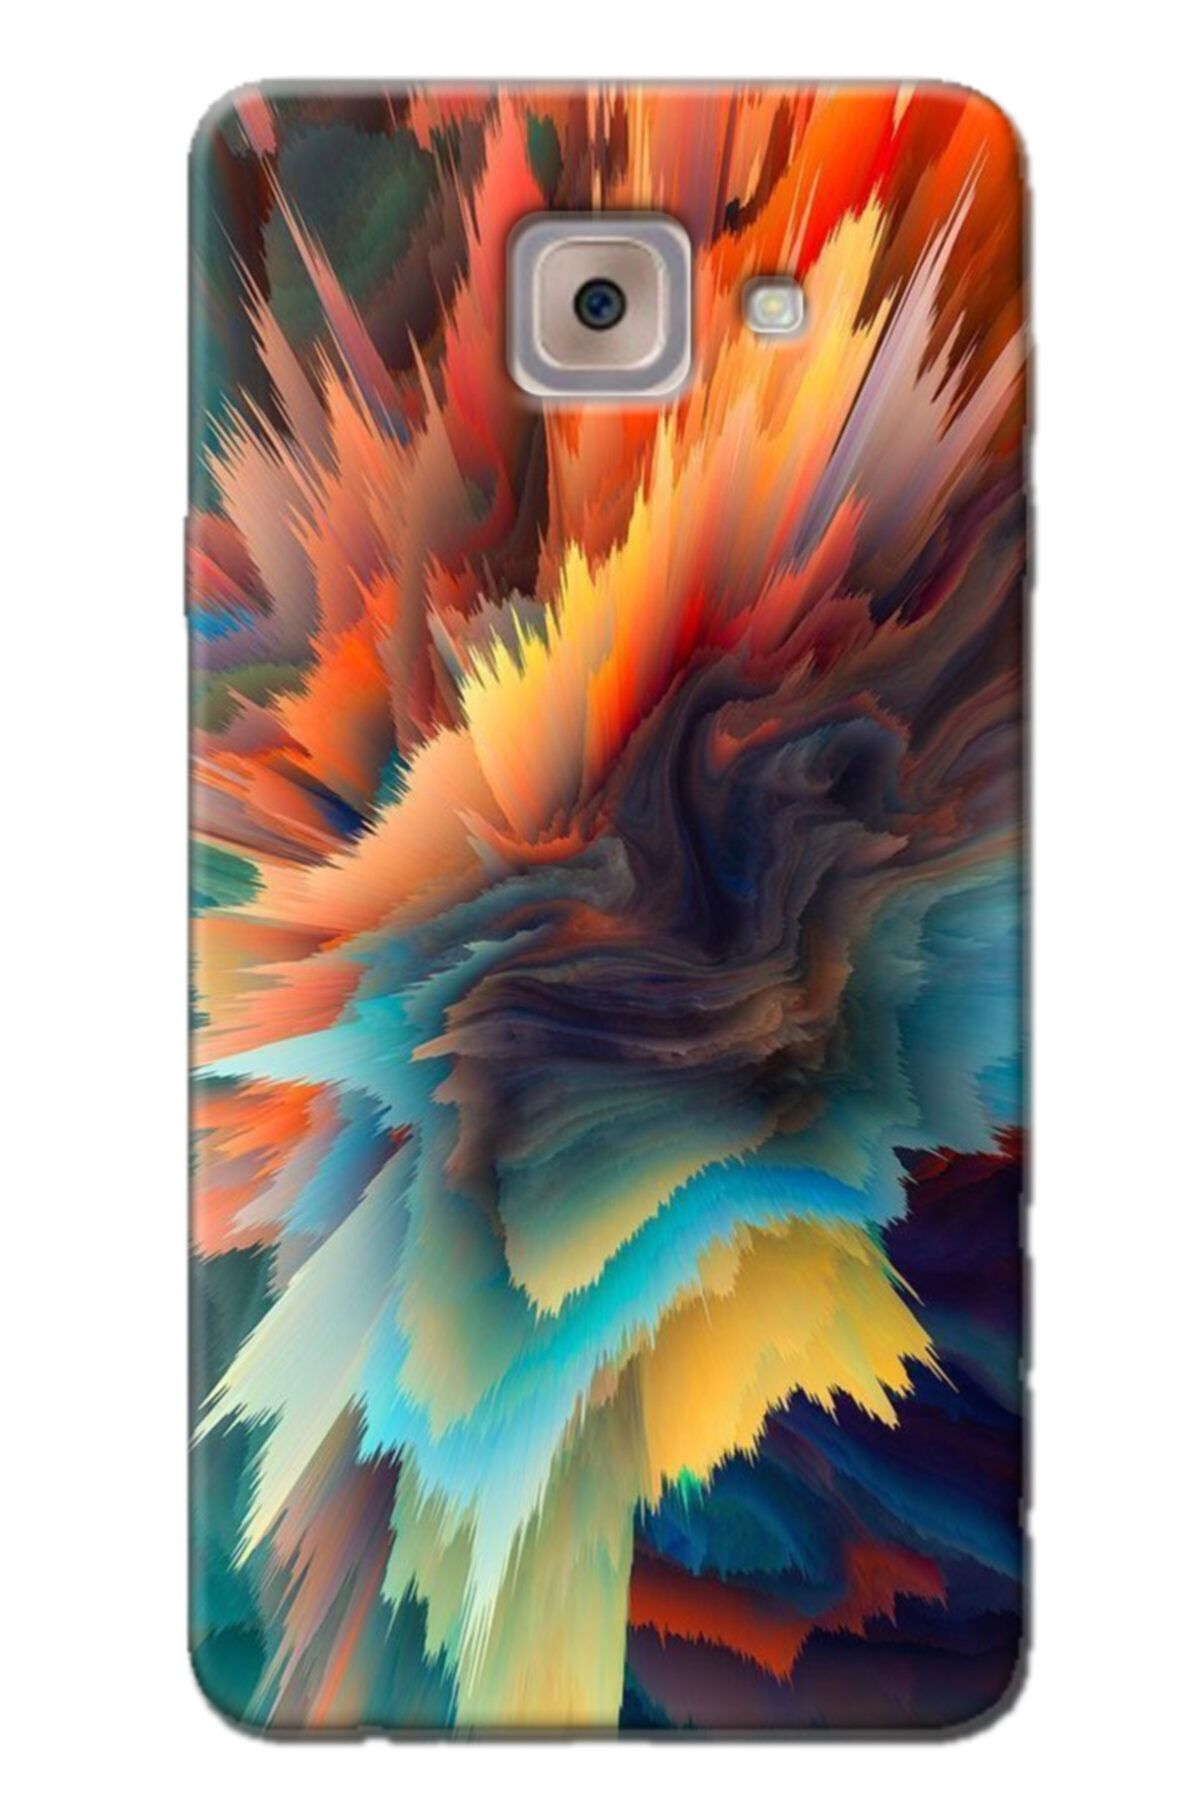 Turkiyecepaksesuar Samsung Galaxy J7 Max Kılıf Silikon Baskılı Desenli Arka Kapak